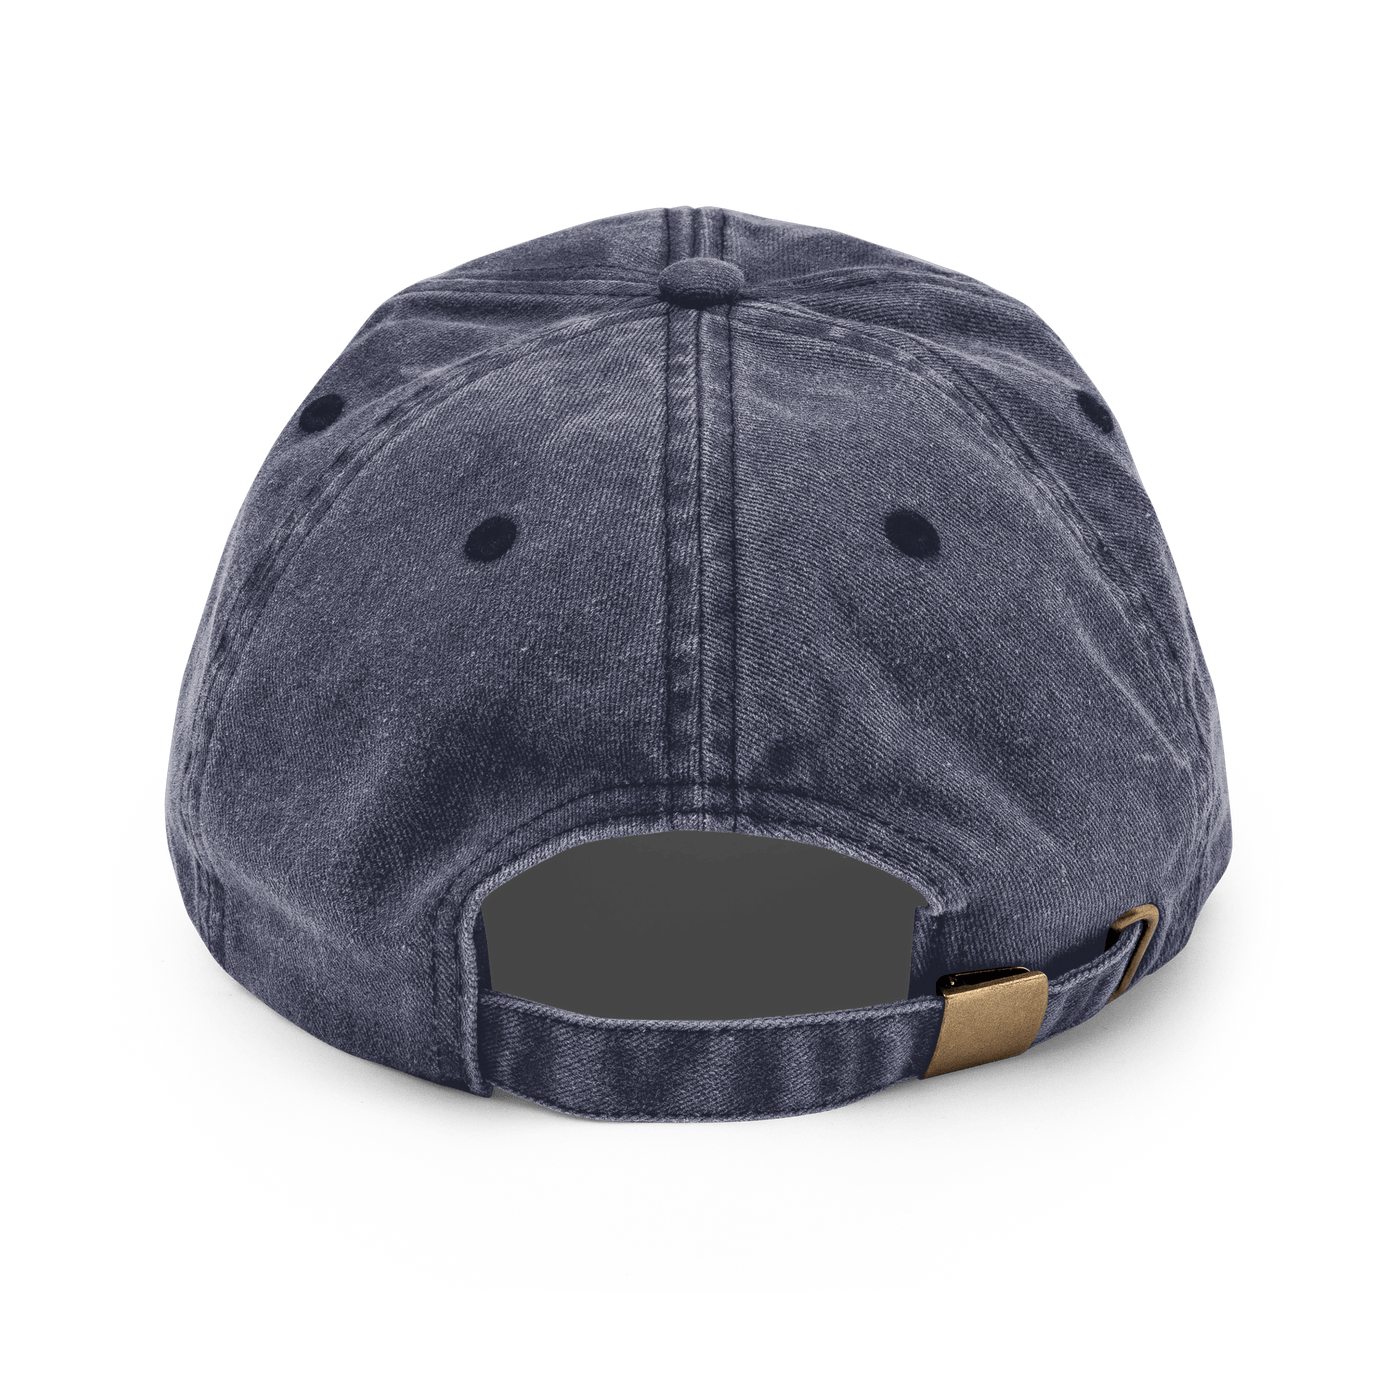 Ramen Bowl Vintage Hat - Vintage Denim - - Just Another Cap Store